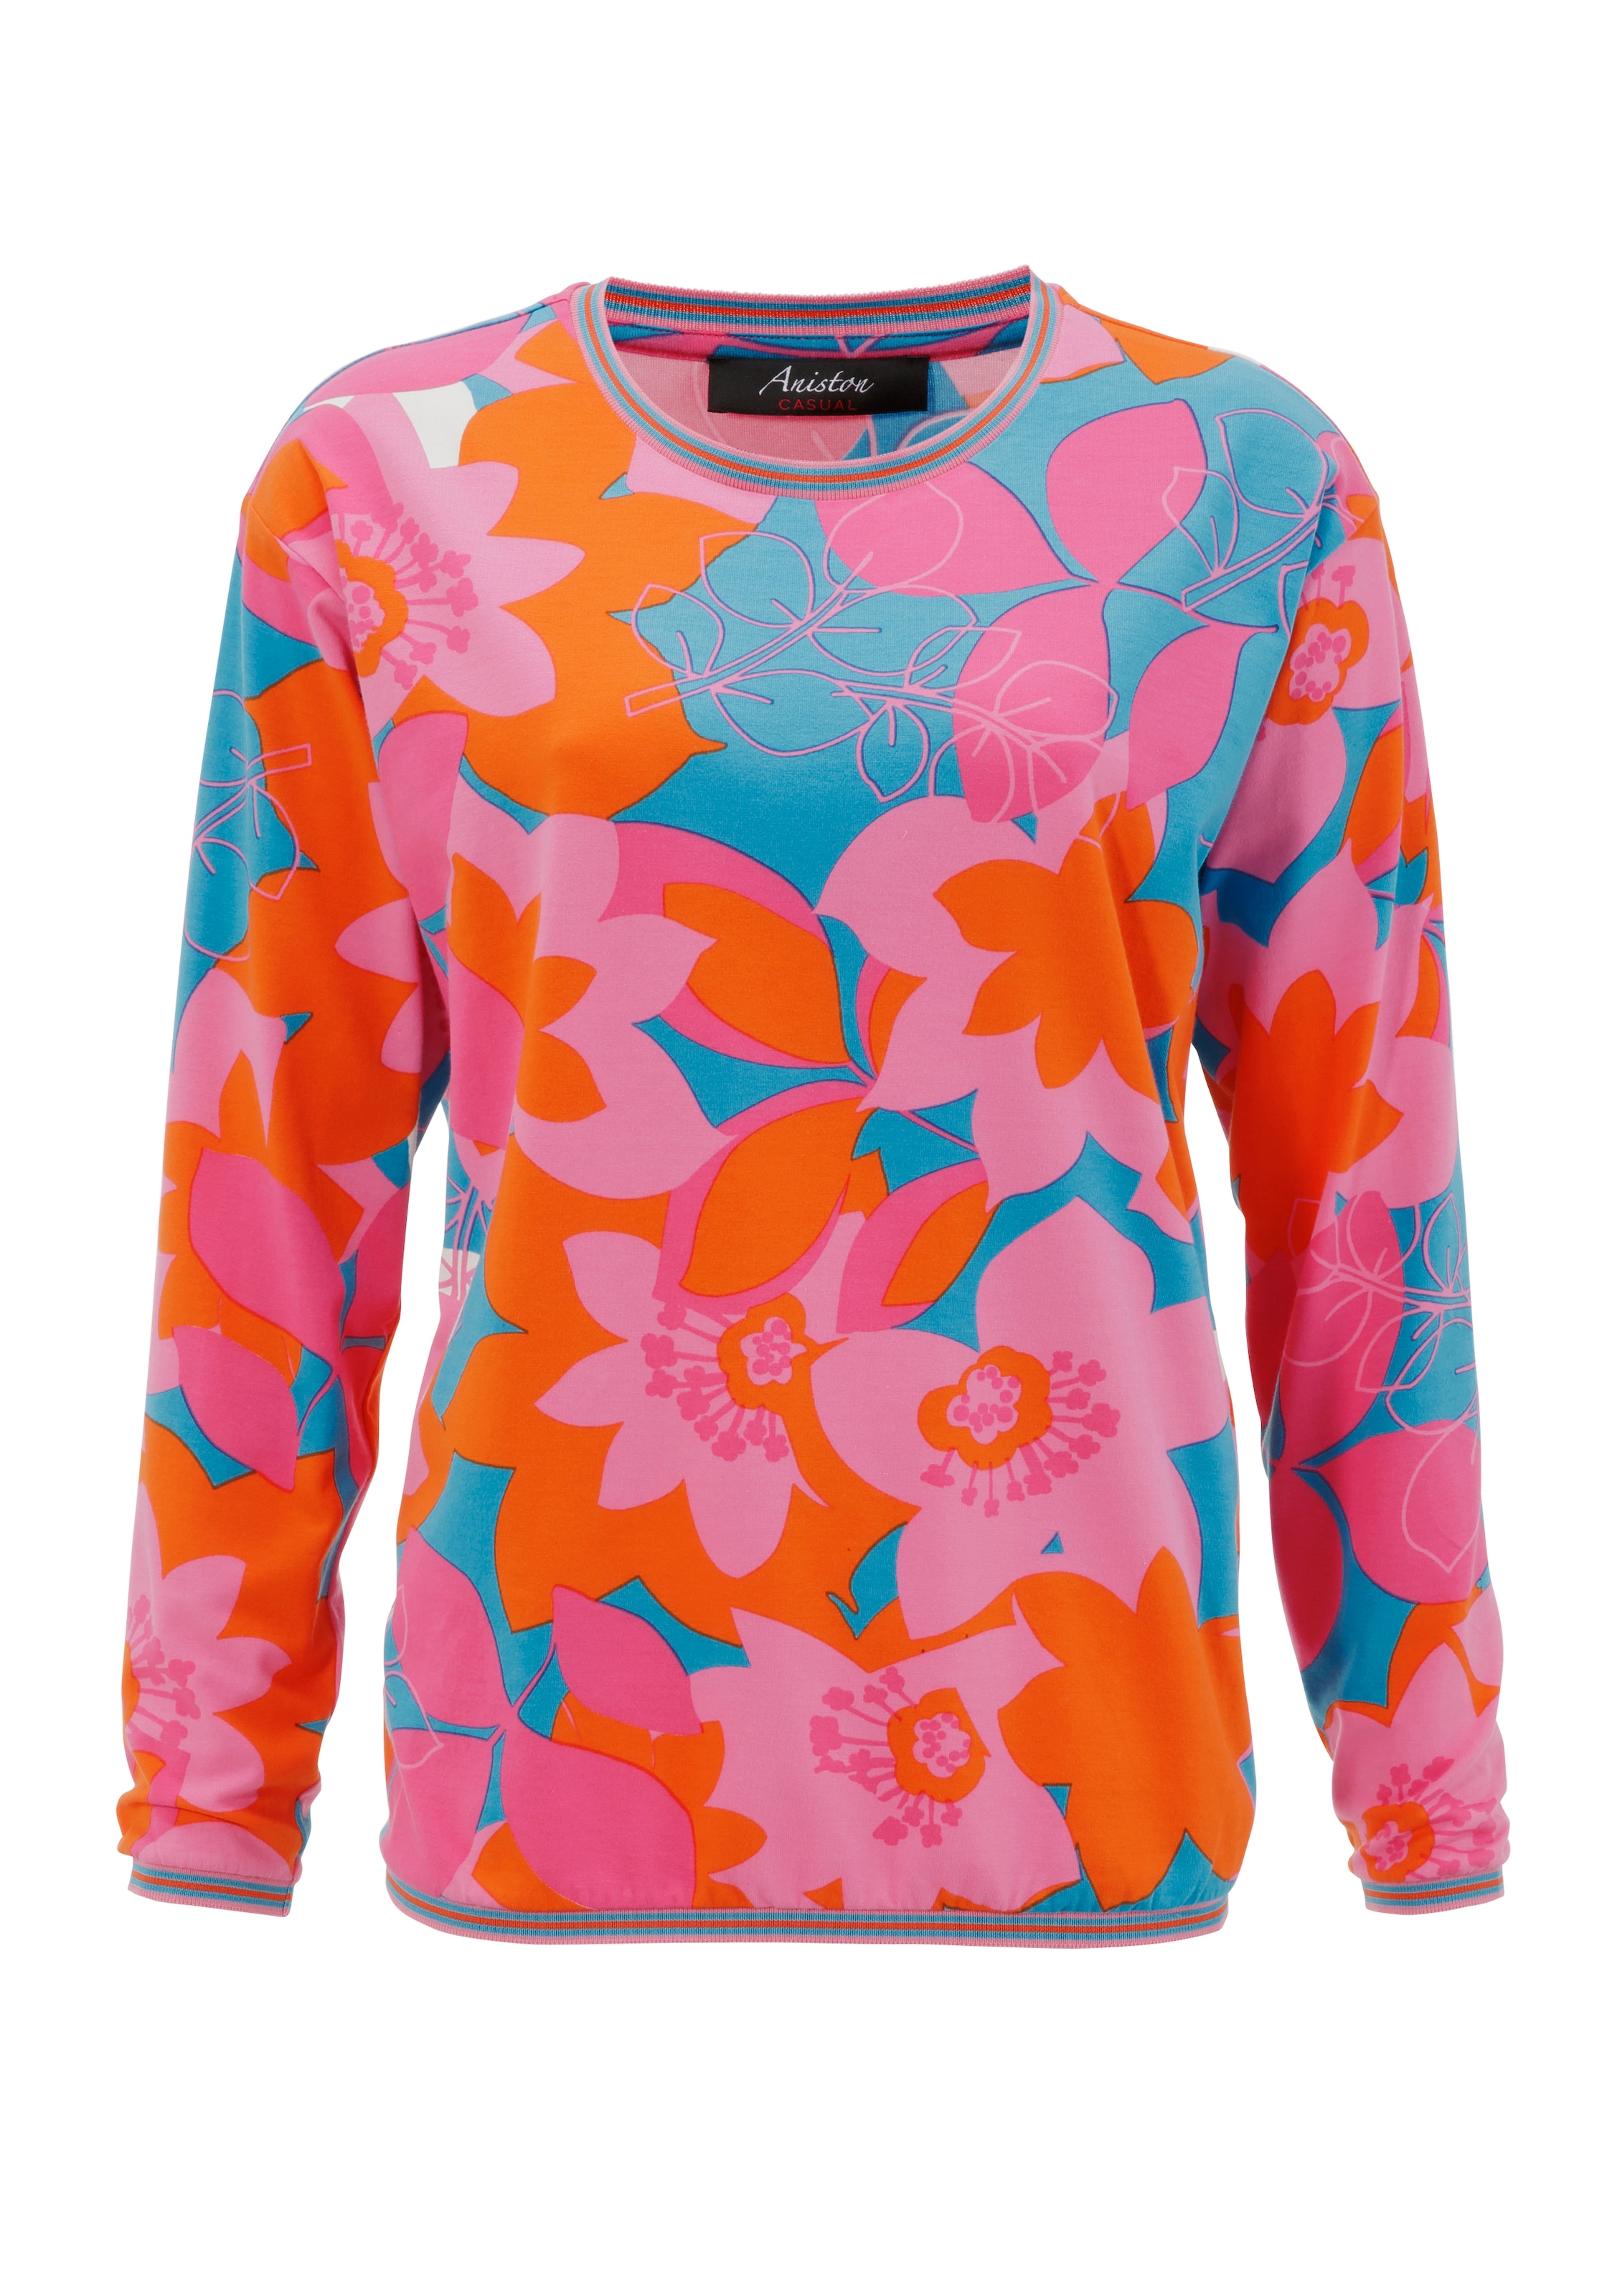 Aniston CASUAL Sweatshirt, farbenfrohen großflächigem, mit Blumendruck OTTO im Shop Online